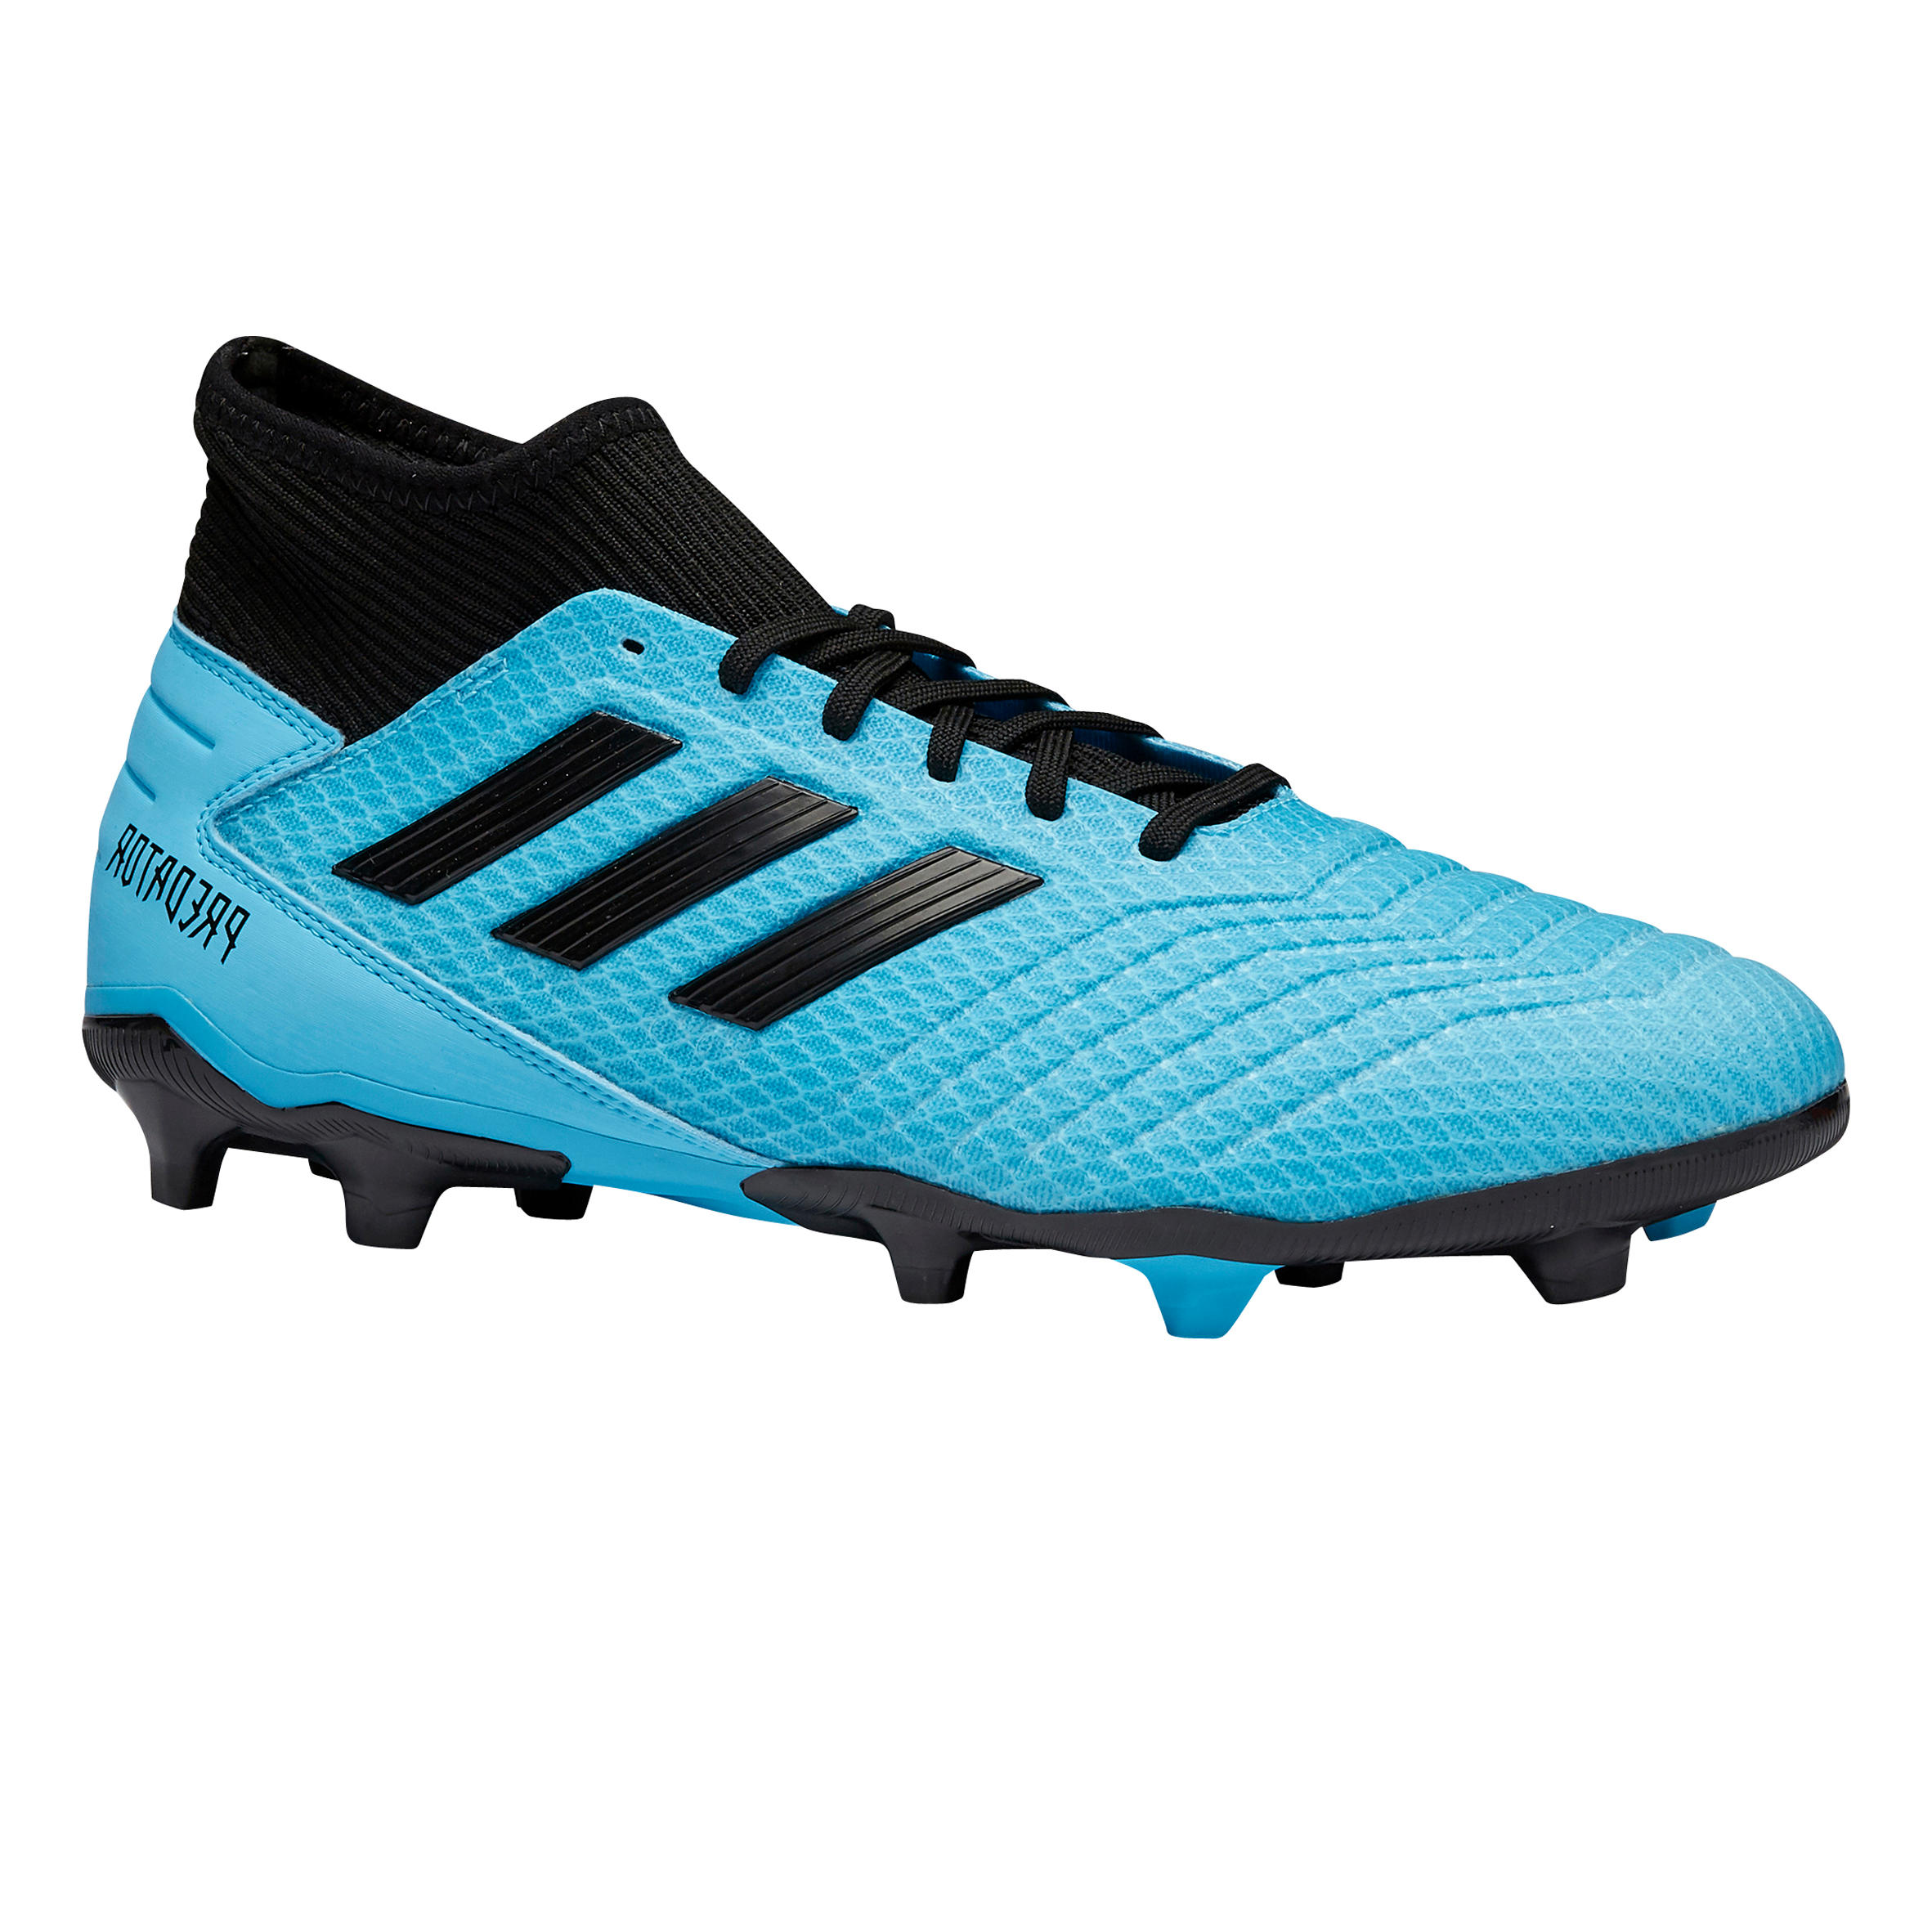 Chaussure de football adulte Predator 19.3 FG bleu Adidas | Decathlon